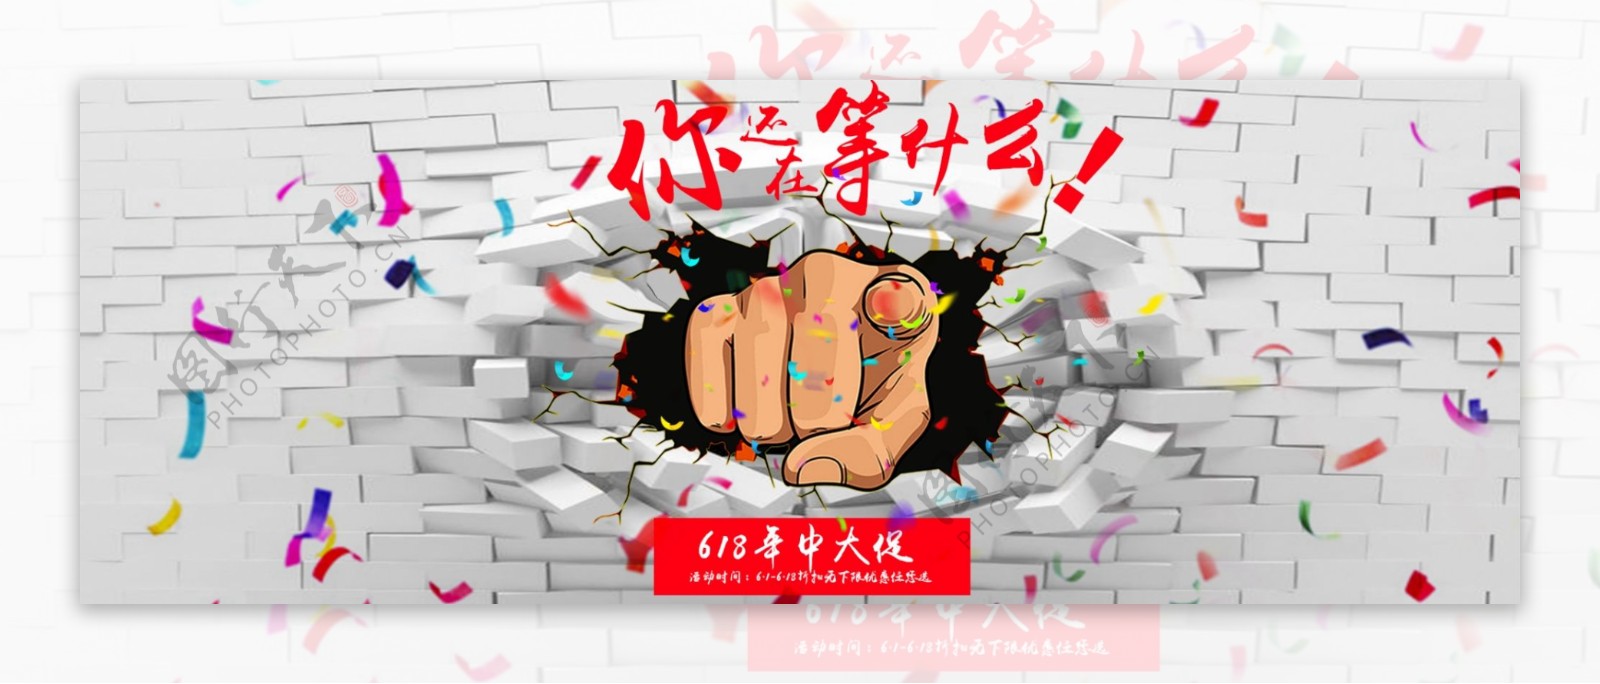 淘宝天猫京东618年中大促活动节日海报